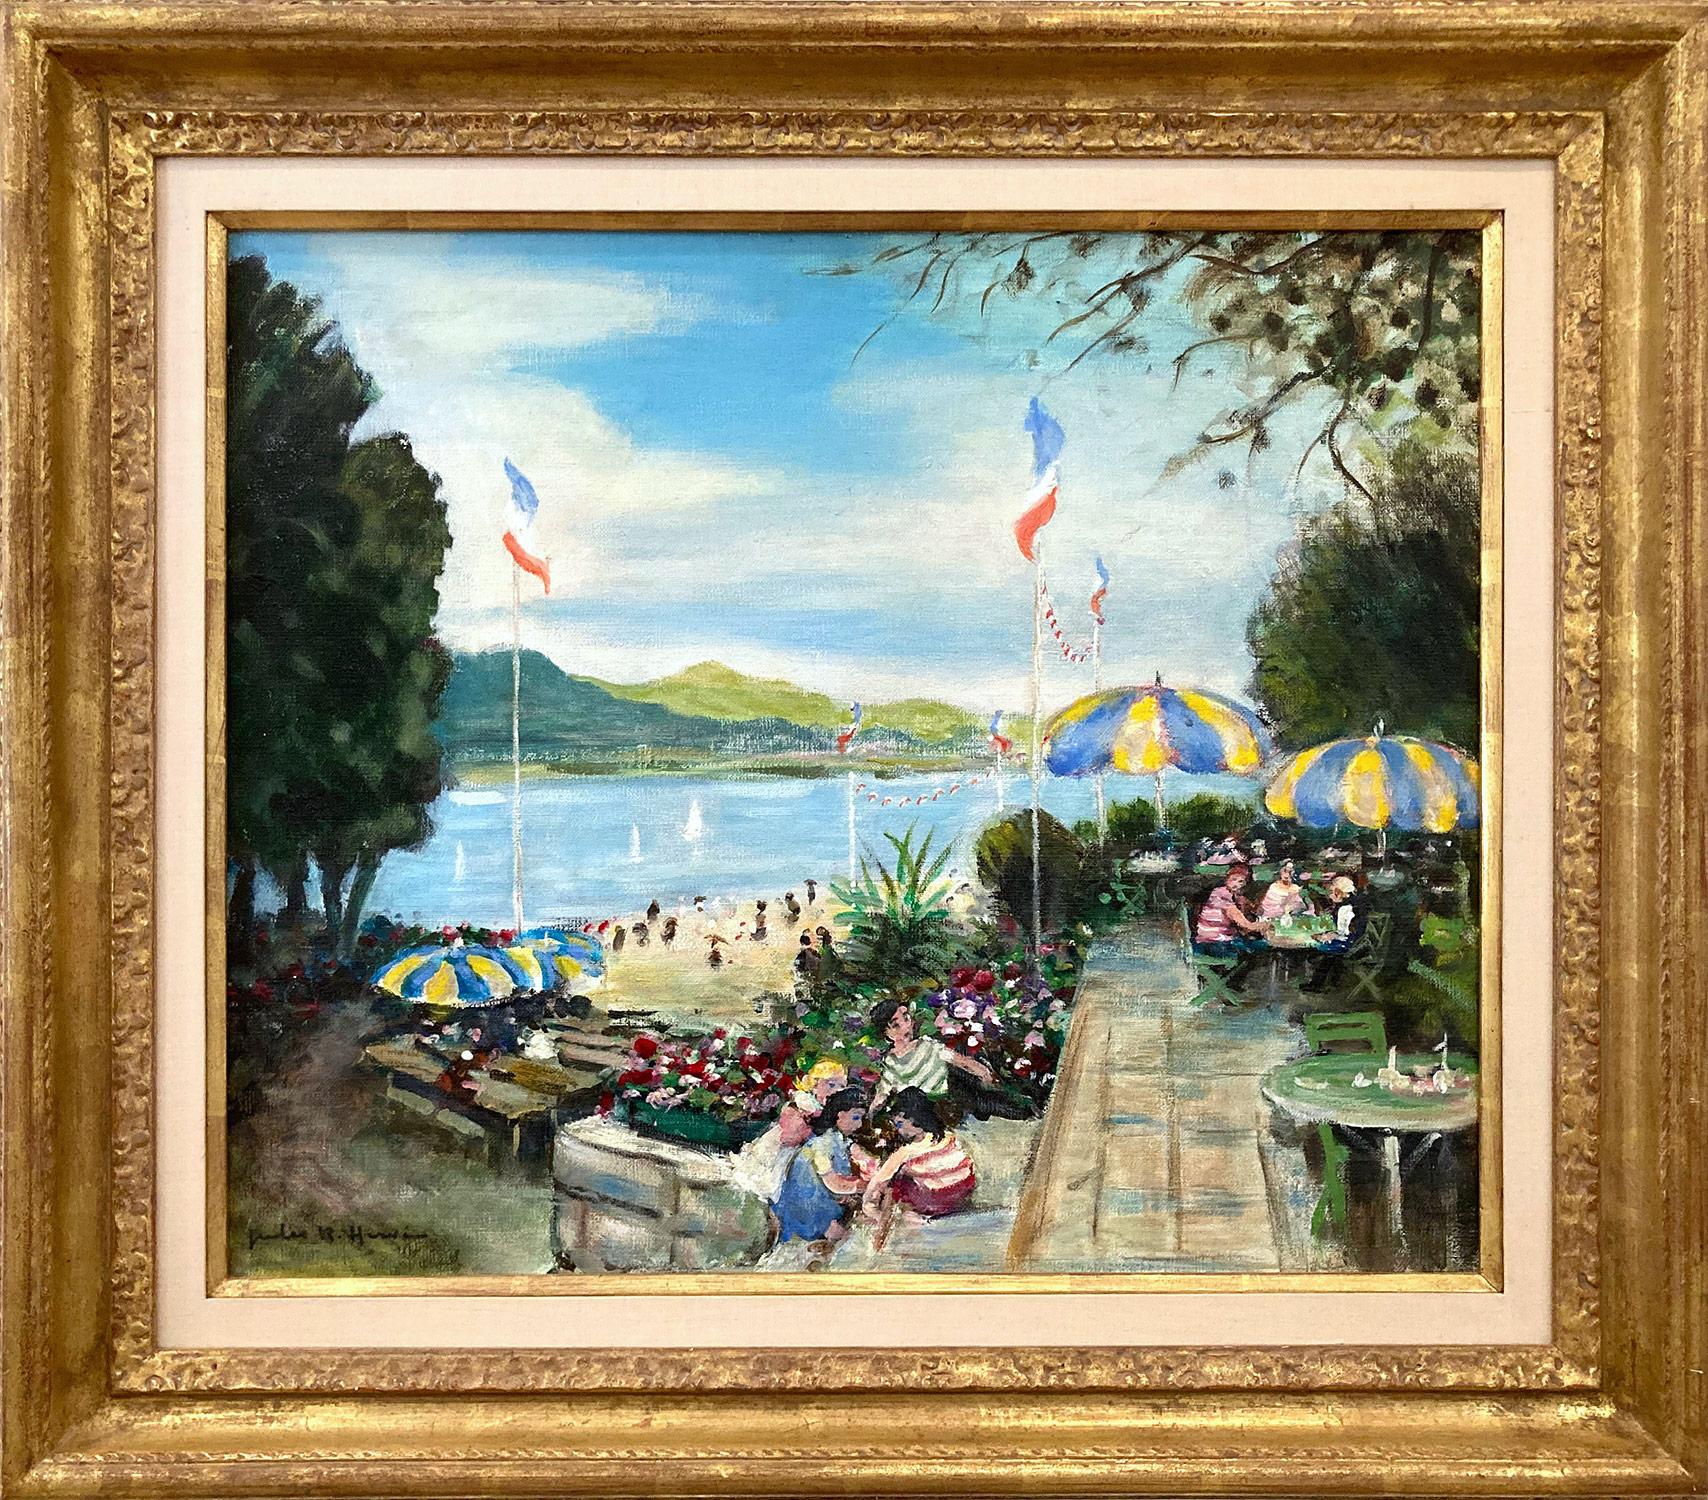 Figurative Painting Jules René Hervé - « Cafe by the Beach in the Summer » - Peinture à l'huile impressionniste sur toile avec personnages